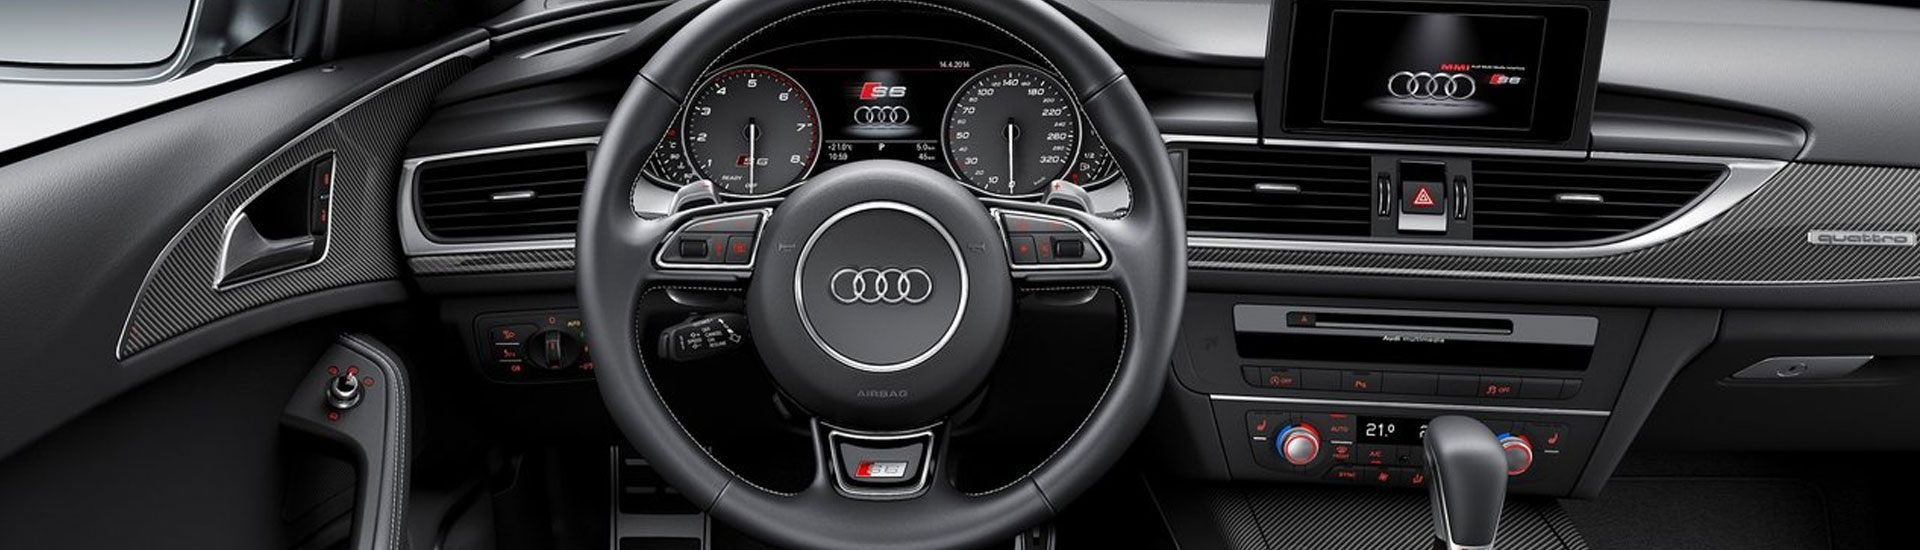 Audi S6 Custom Dash Kits